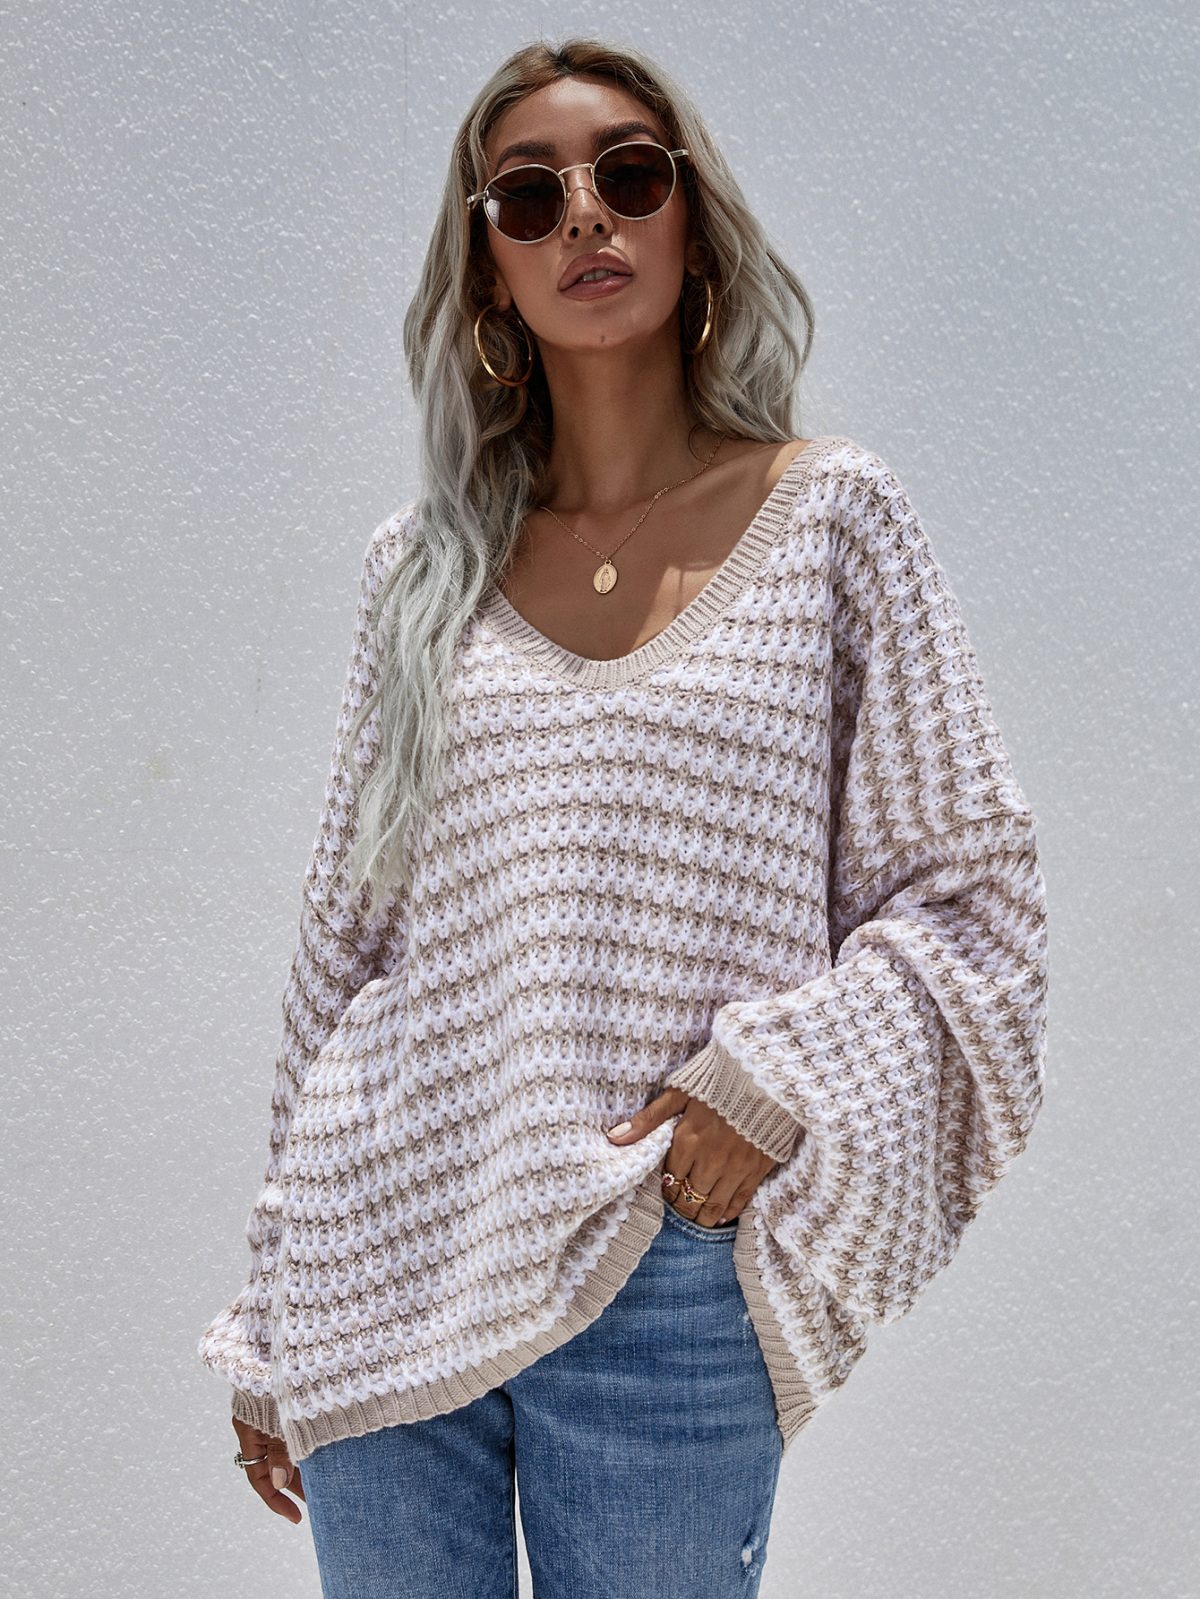 Stripe Knitwear V Neck Sweater | Uniqistic.com